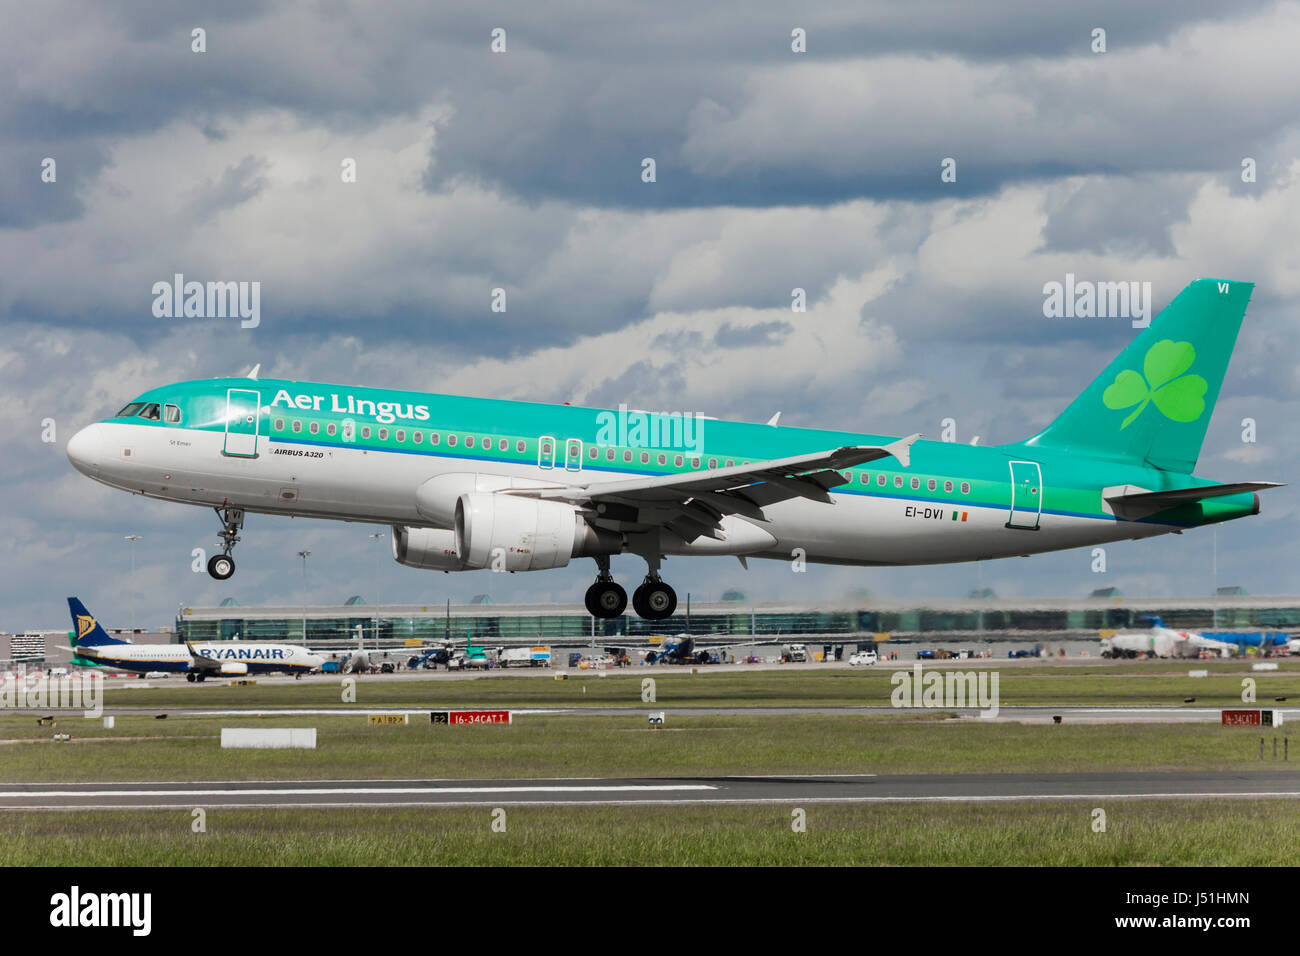 Aer Lingus Landing in Dublin Stock Photo